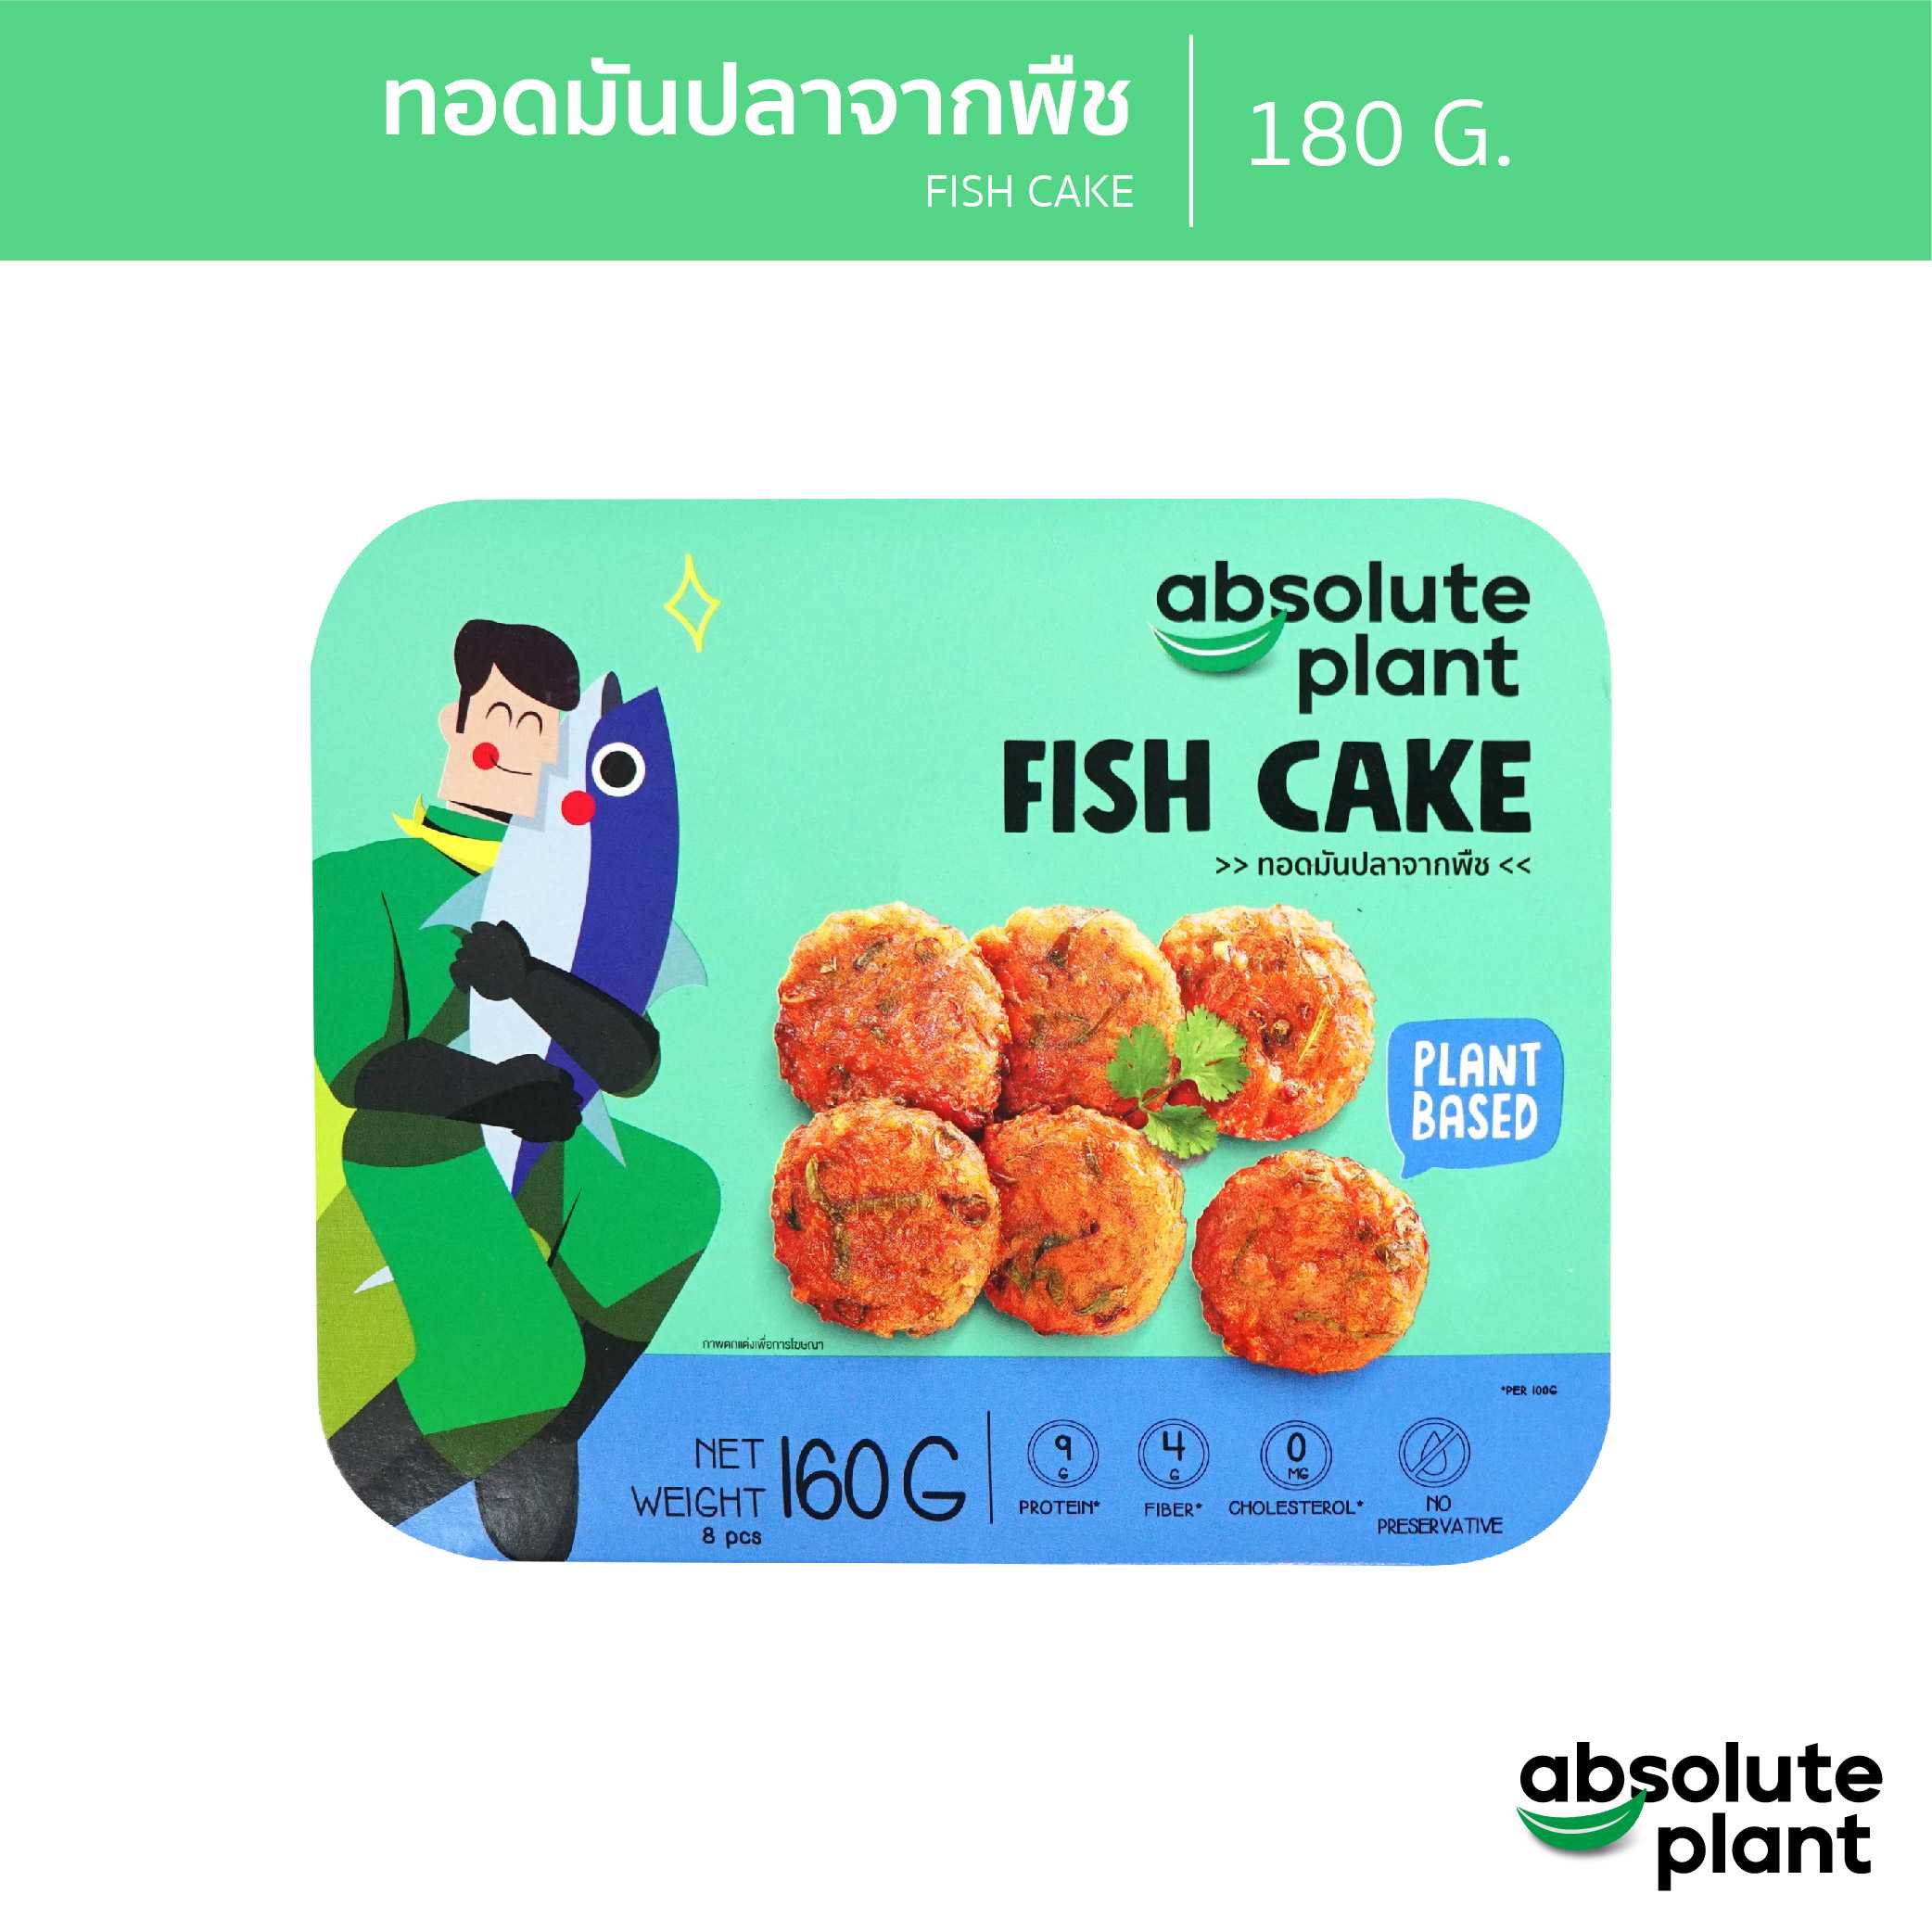 ทอดมันปลาจากพืช / Plant - Based Fish Cake / Absoluteplant